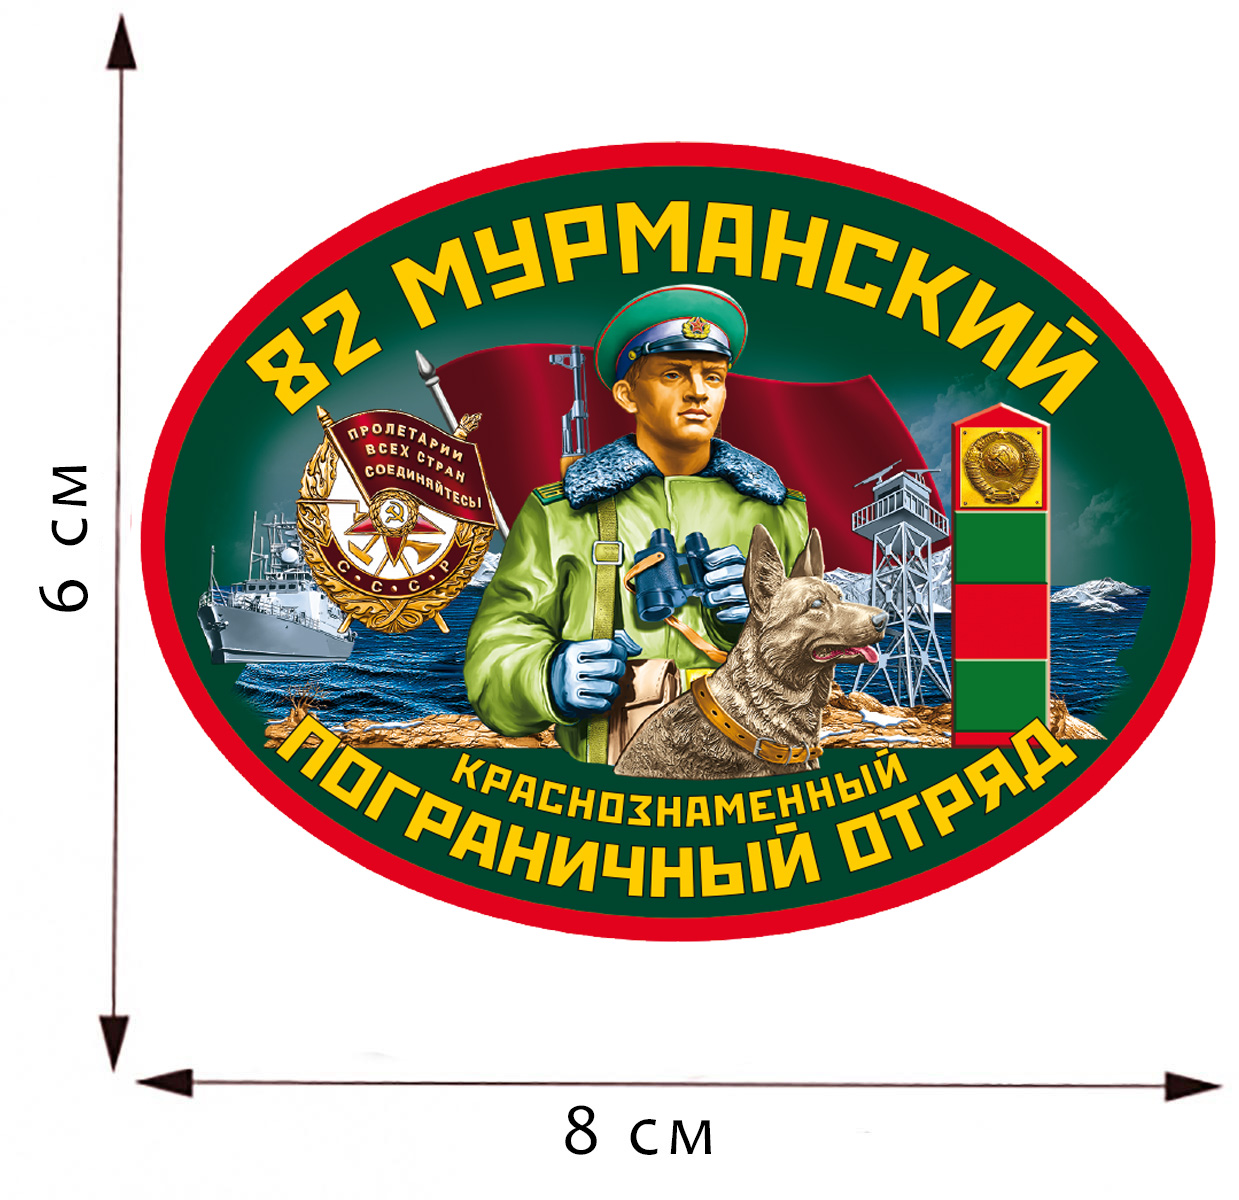 Термоаппликация "82 Мурманский пограничный отряд" 